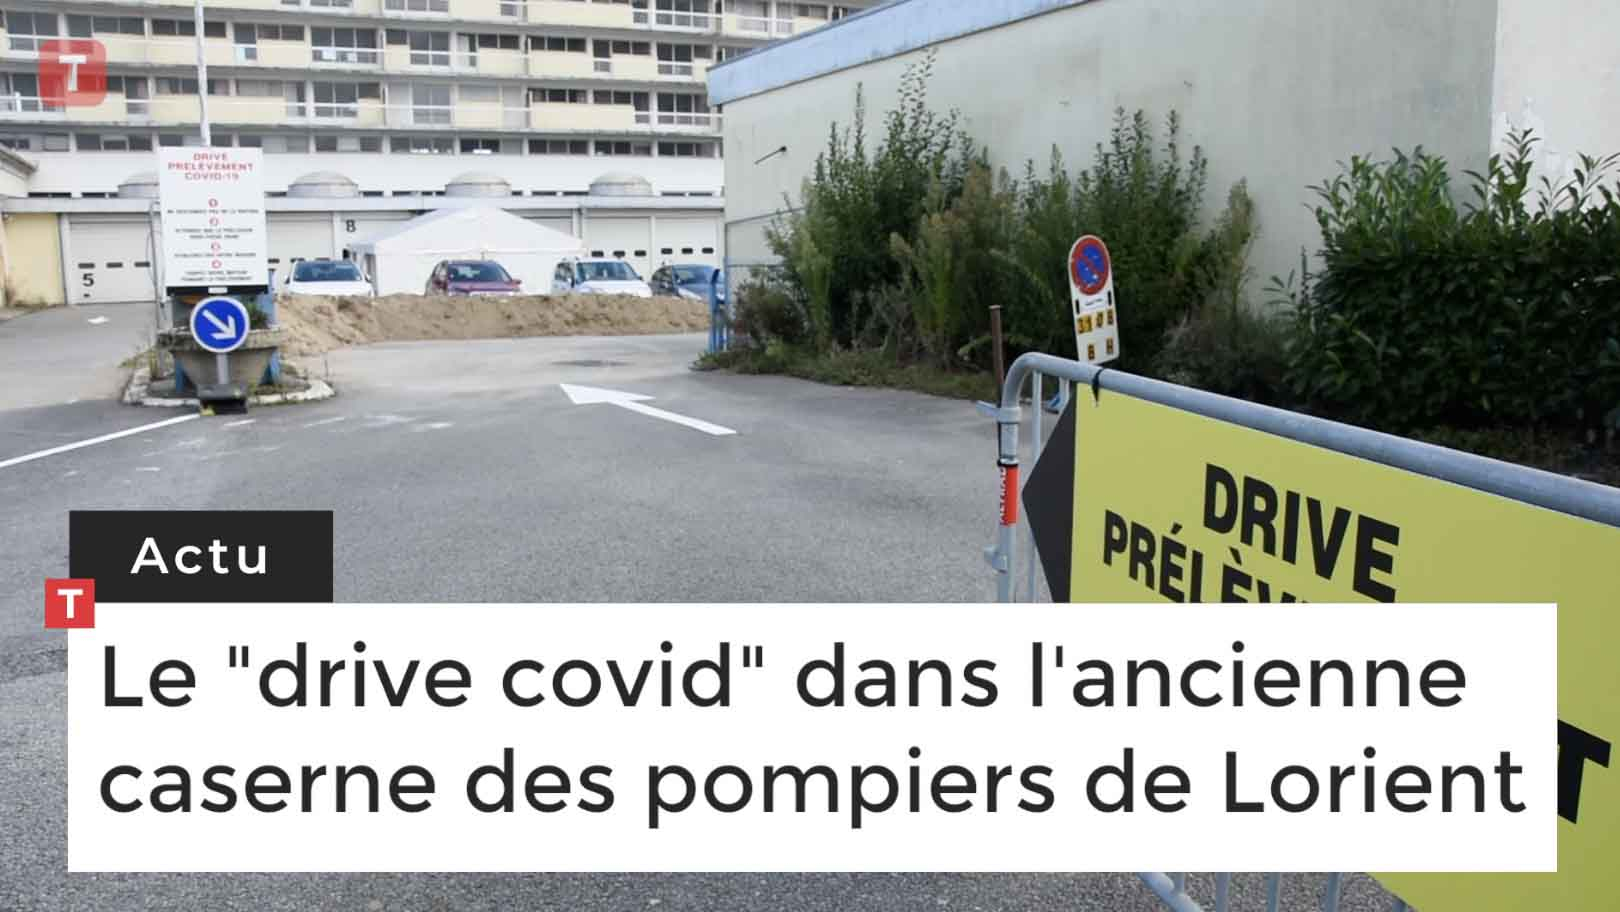 Le "drive covid" dans l'ancienne caserne des pompiers de Lorient (Le Télégramme)